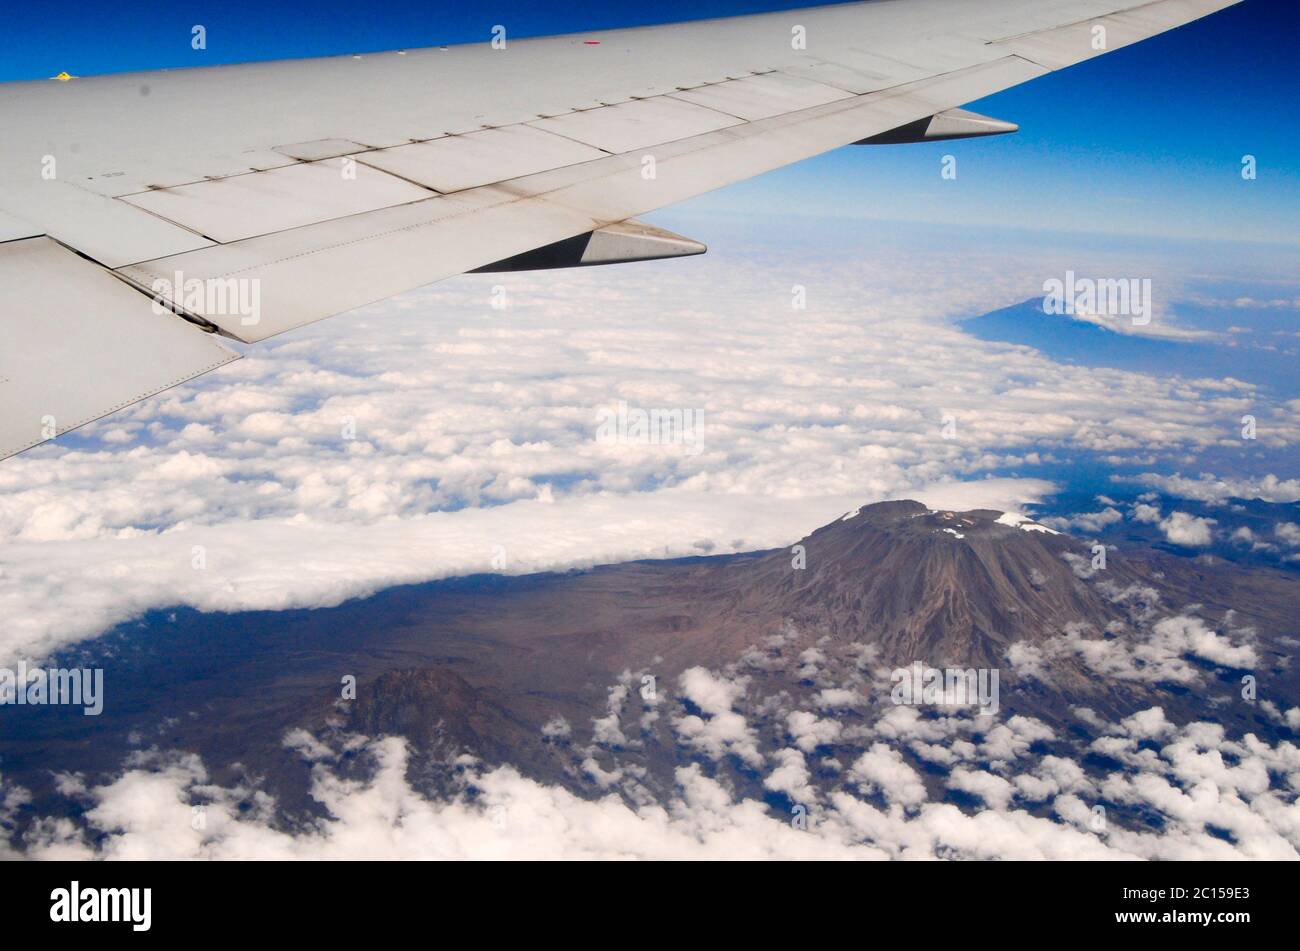 Kilimanjaro mount: aerial view Stock Photo